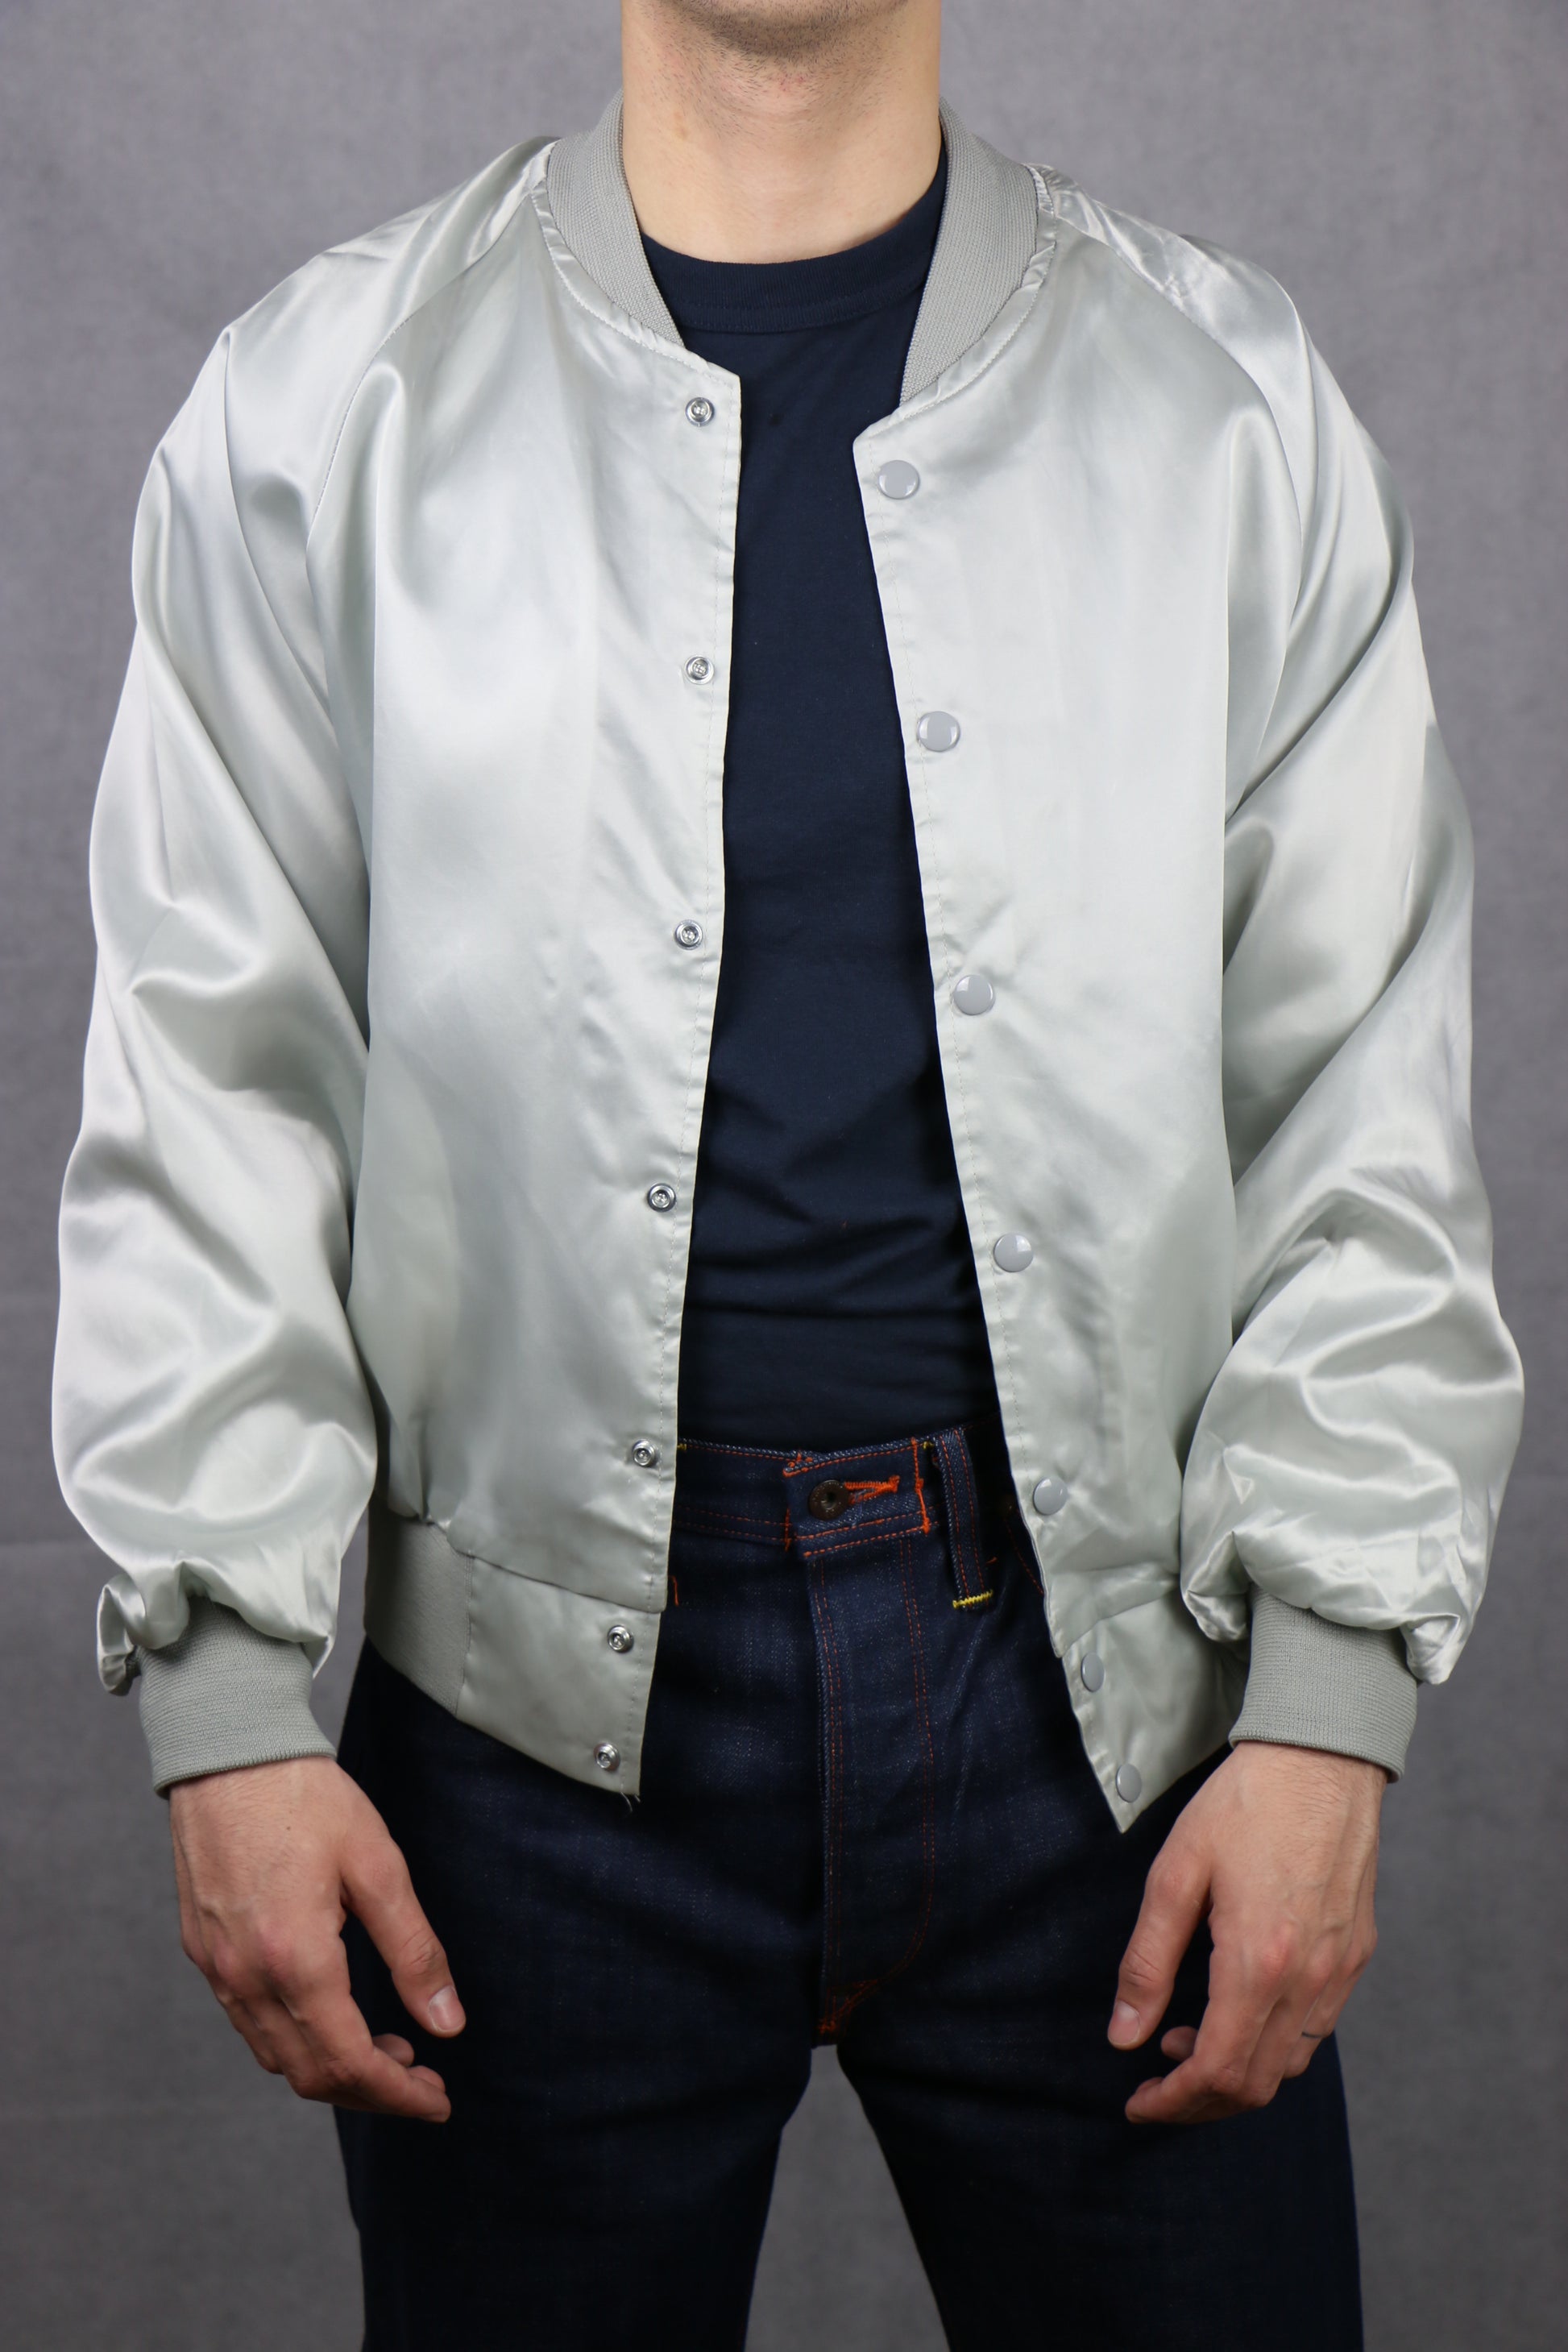 Satin White Bomber Jacket (Mause) - vintage clothing clochard92.com